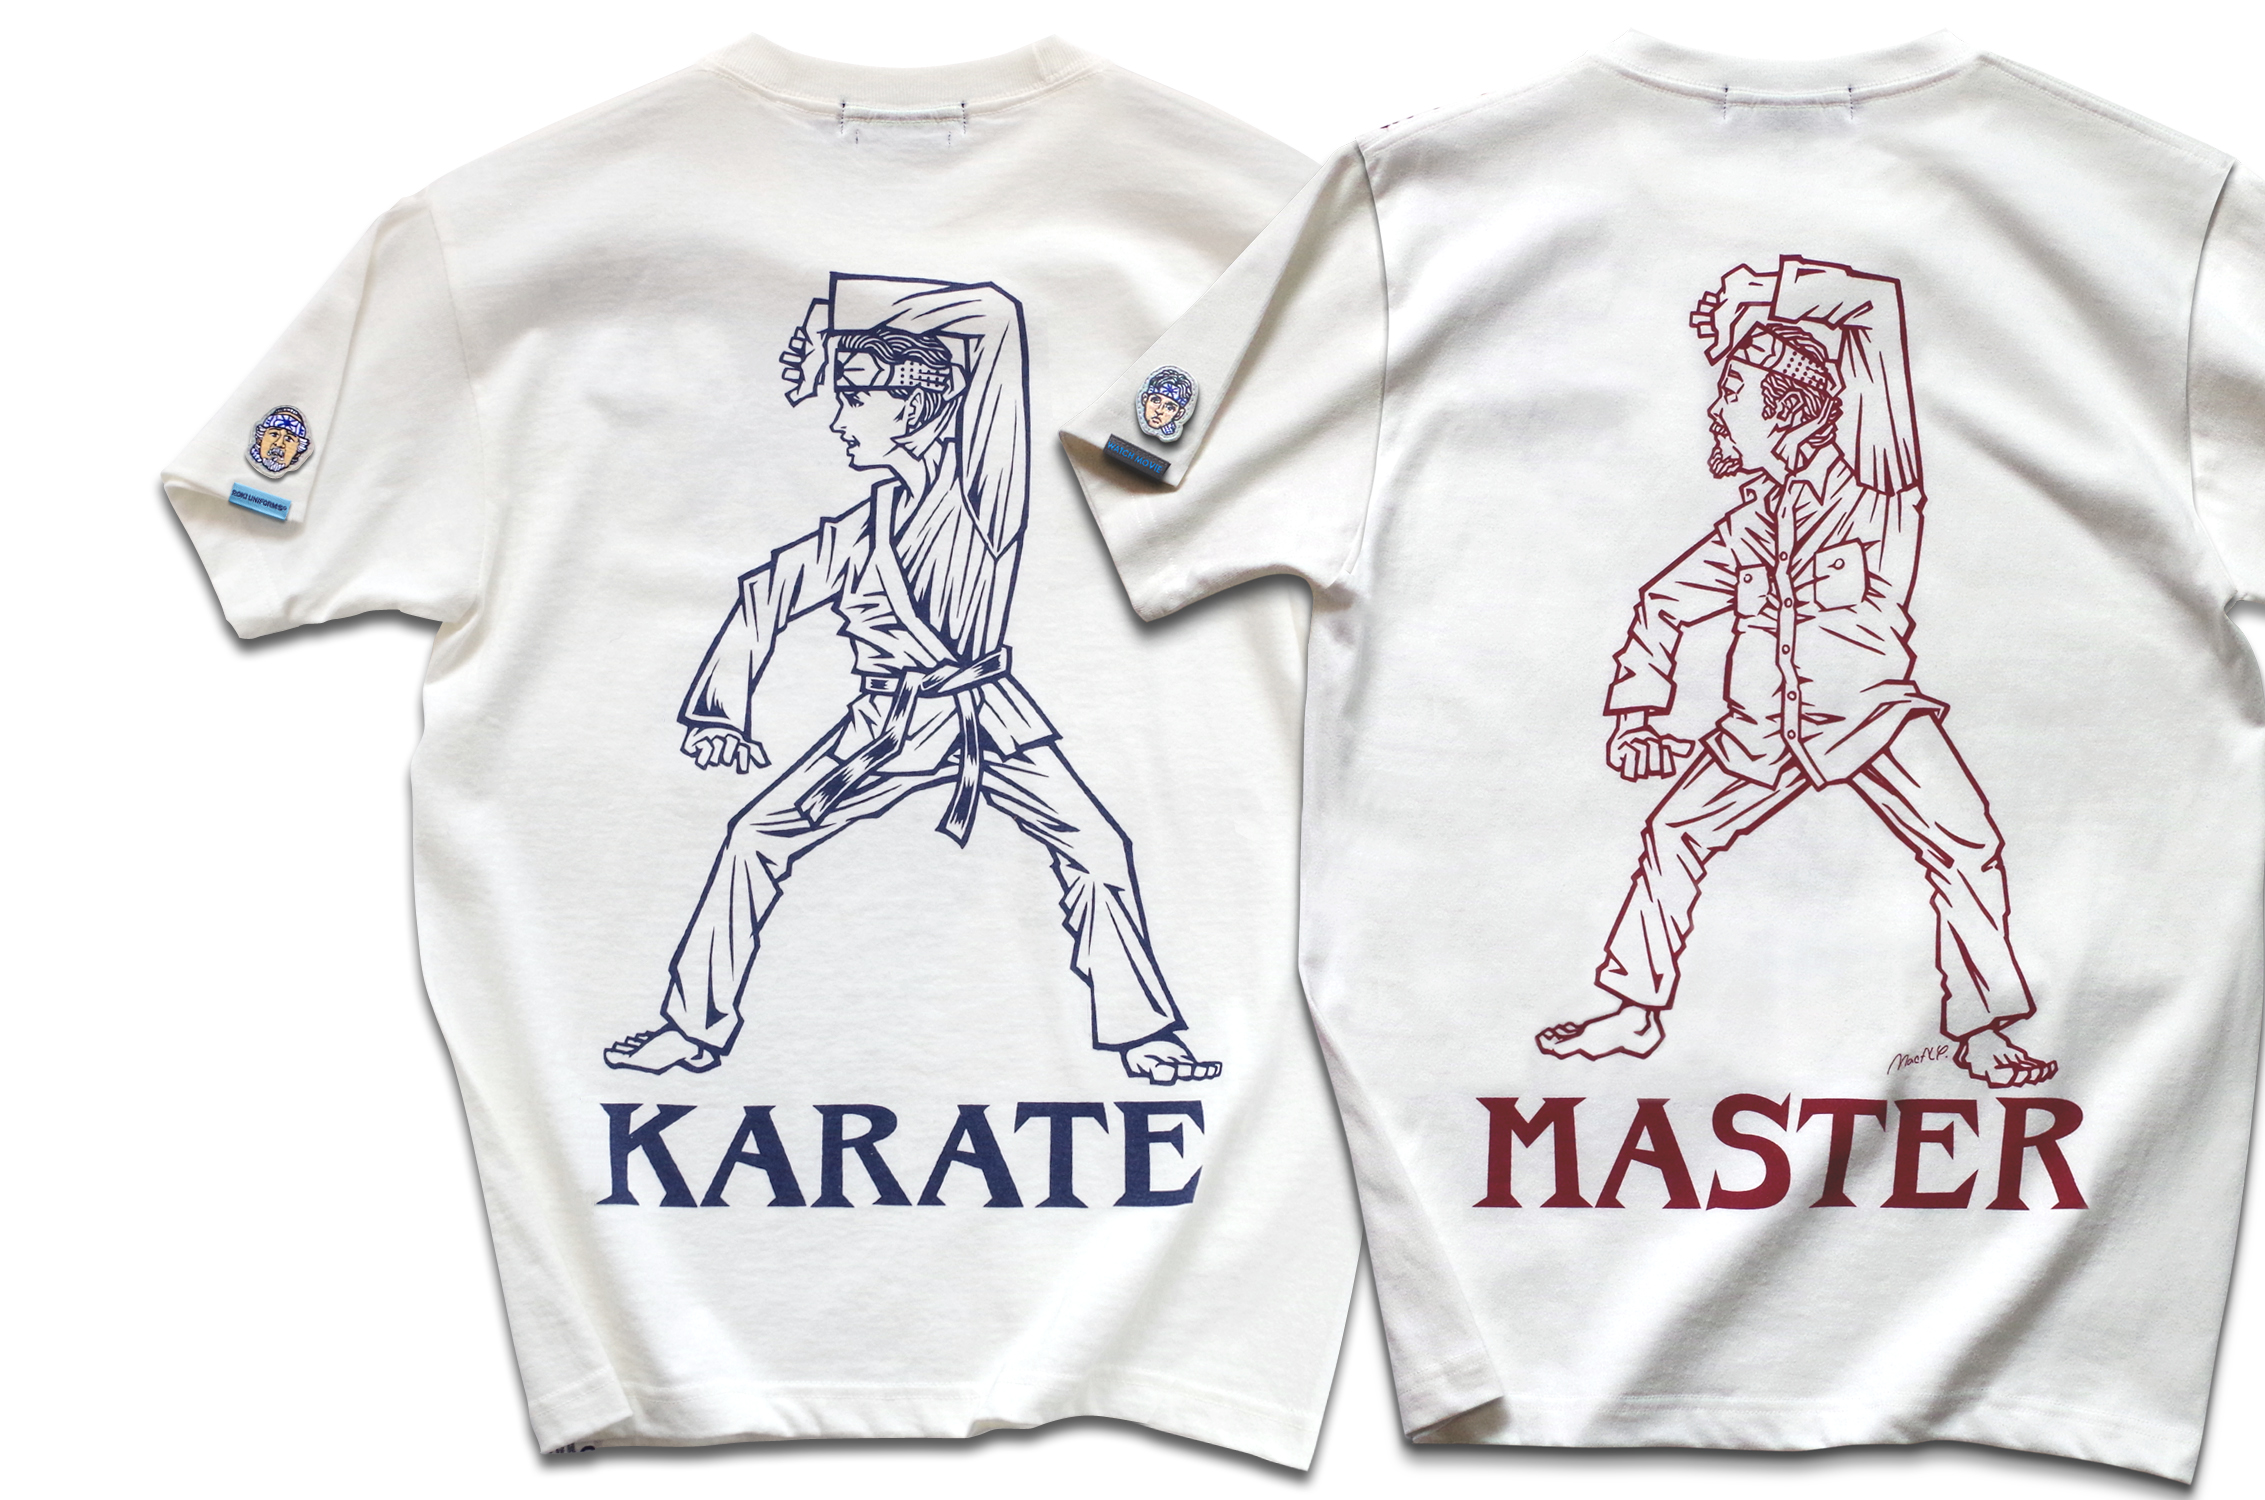 映画『ベスト・キッド』THE KARATE TシャツTOP1